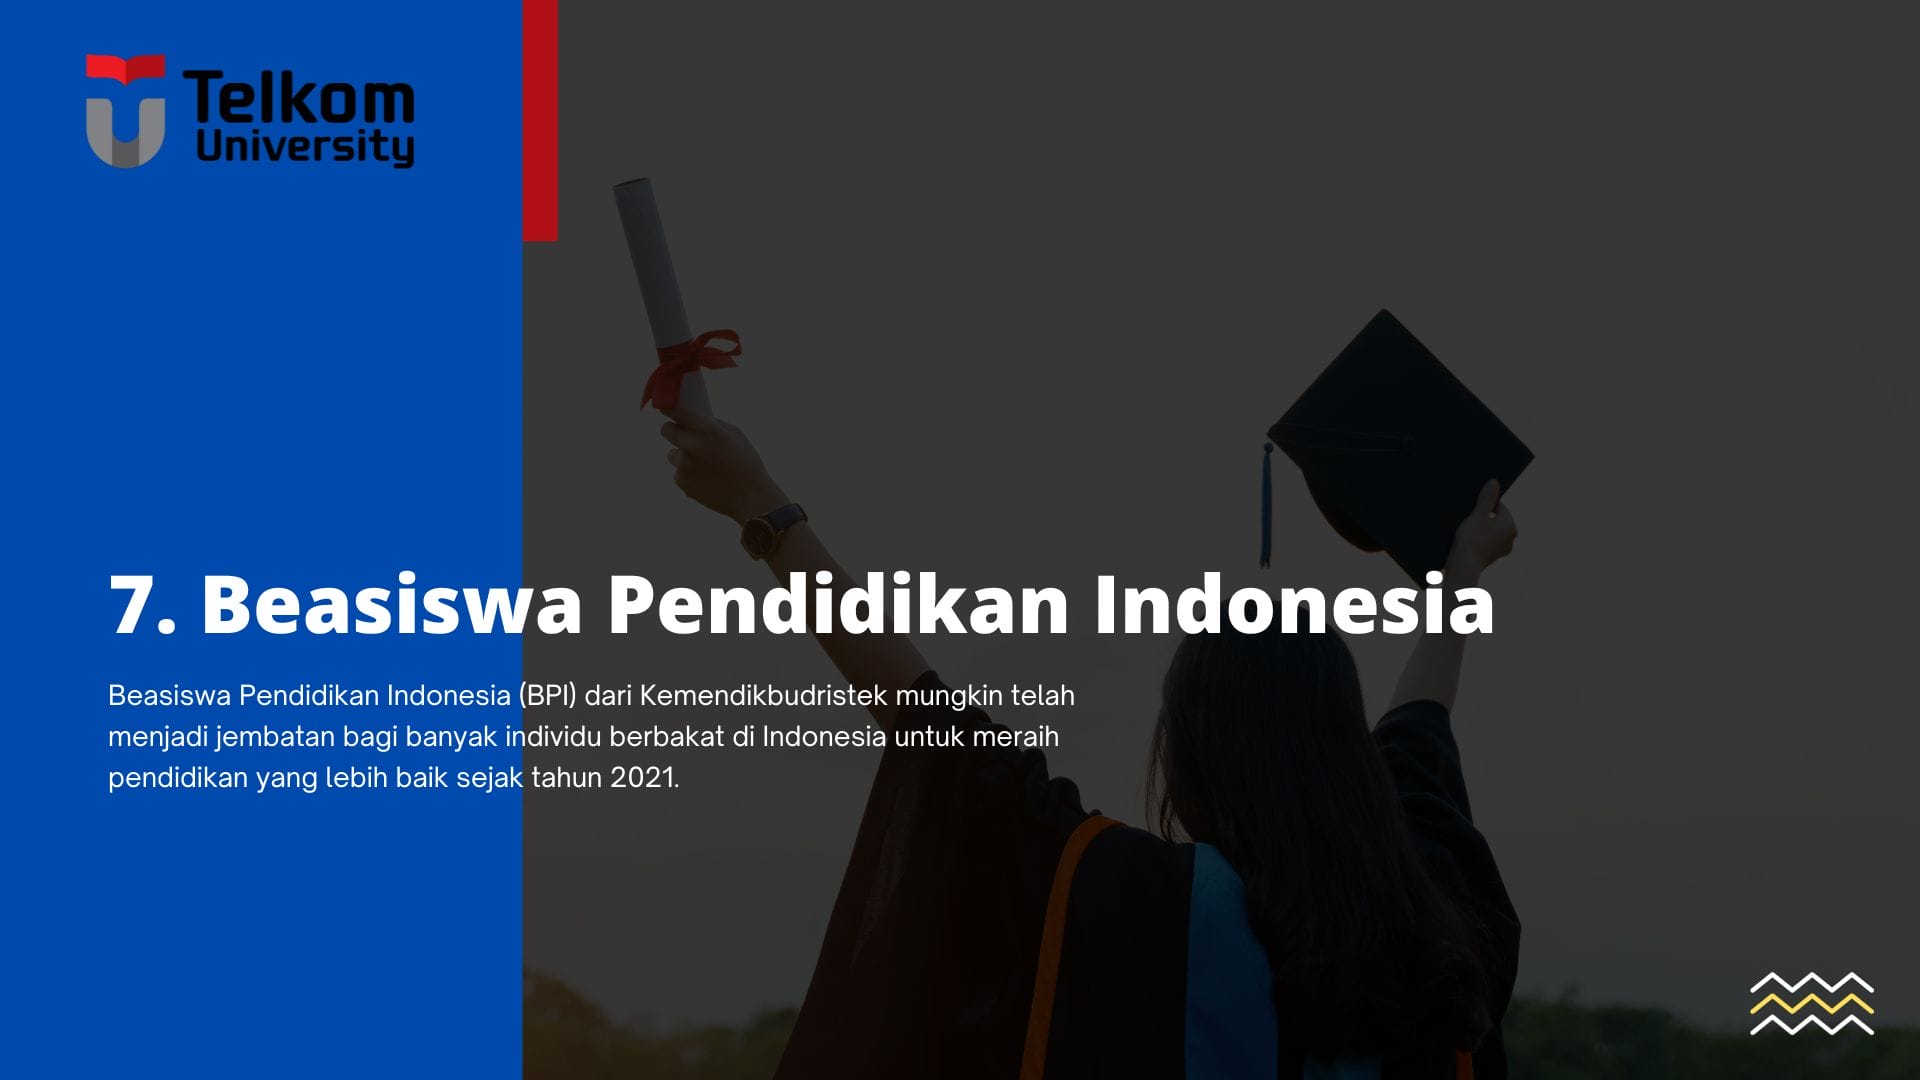 Beasiswa Pendidikan Indonesia